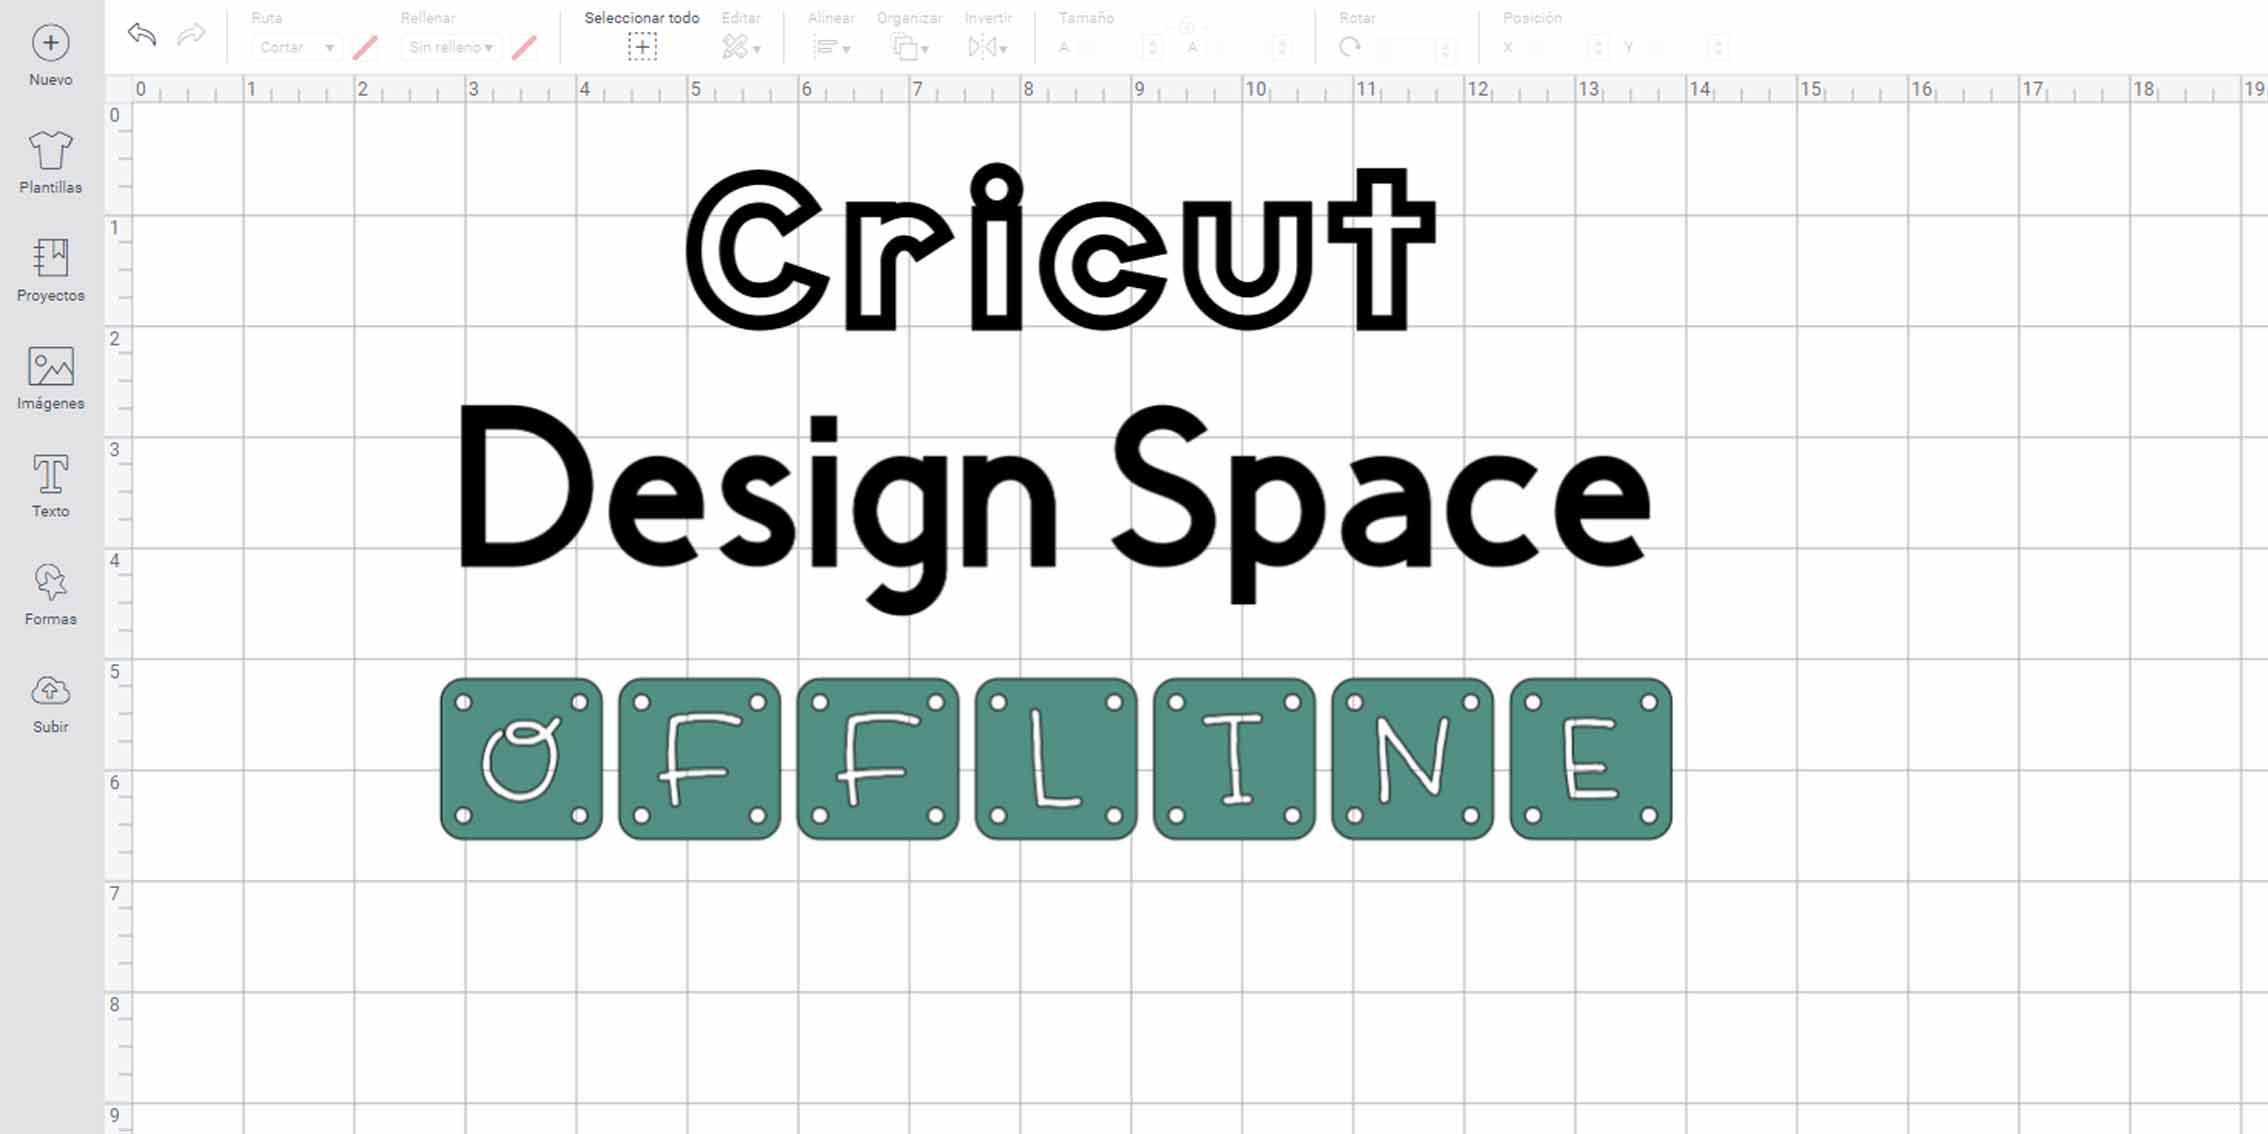 Descarga Cricut Space Offline! - Academia Cricut